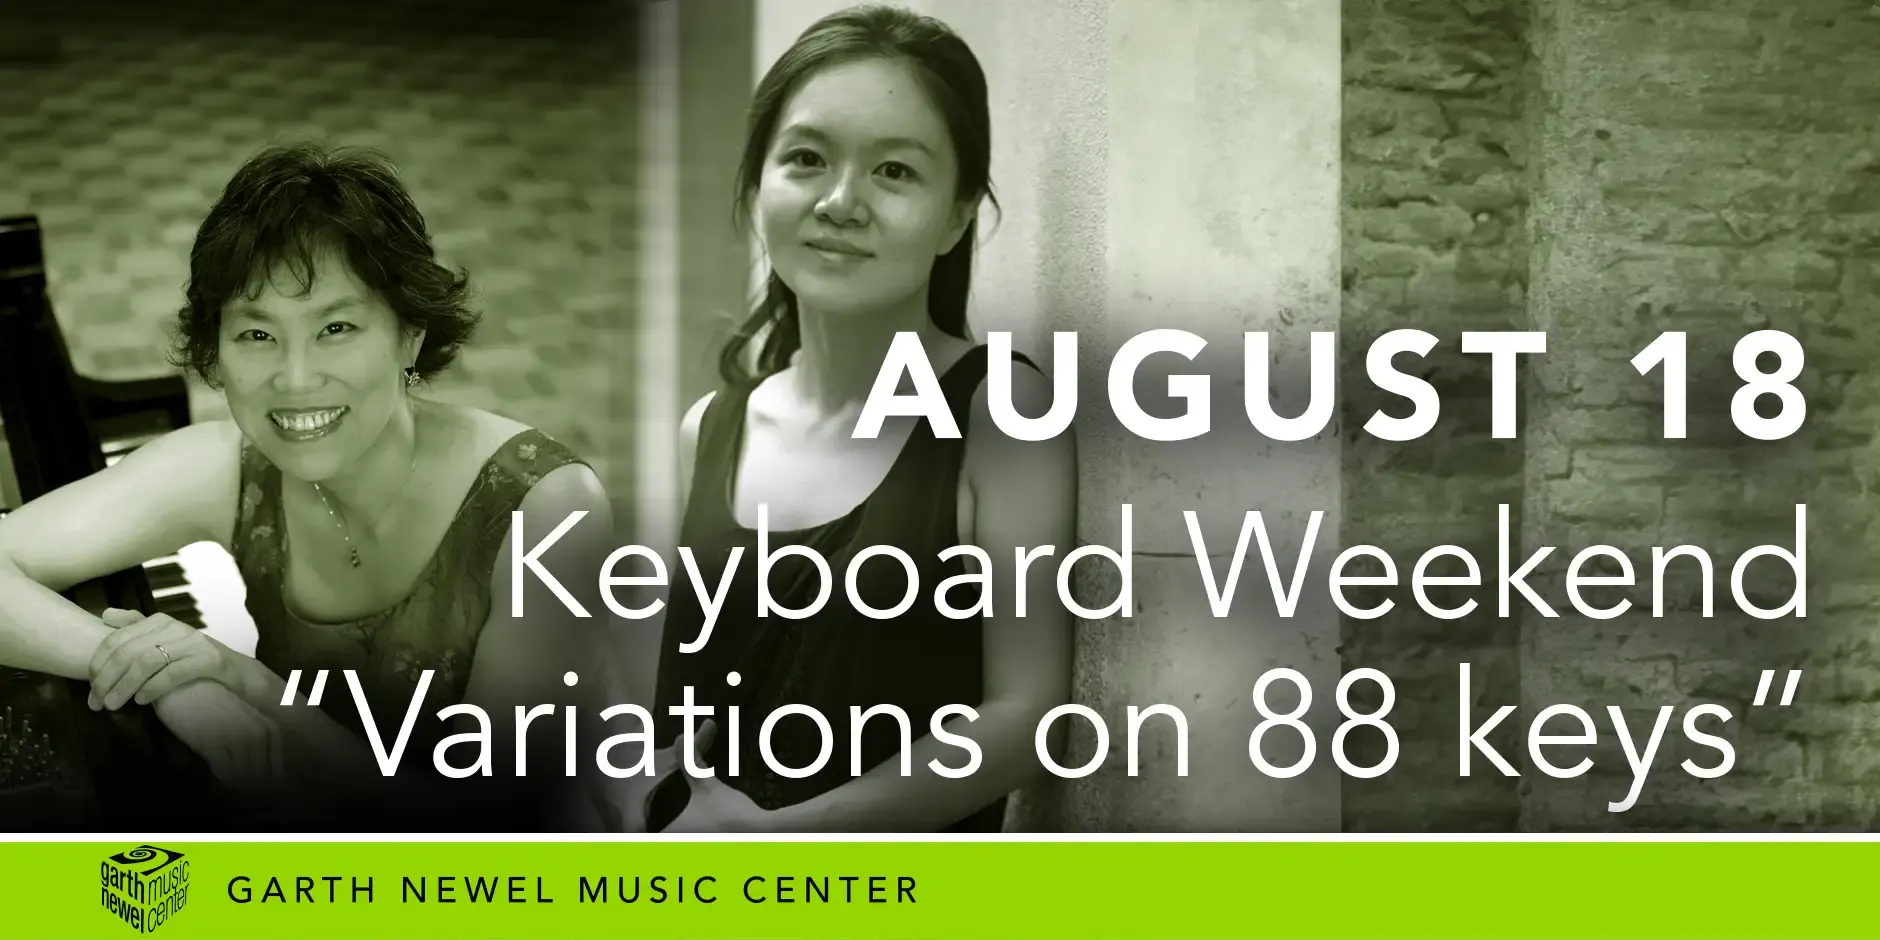 August 18 - Keyboard Weekend - “Variations on 88 keys”